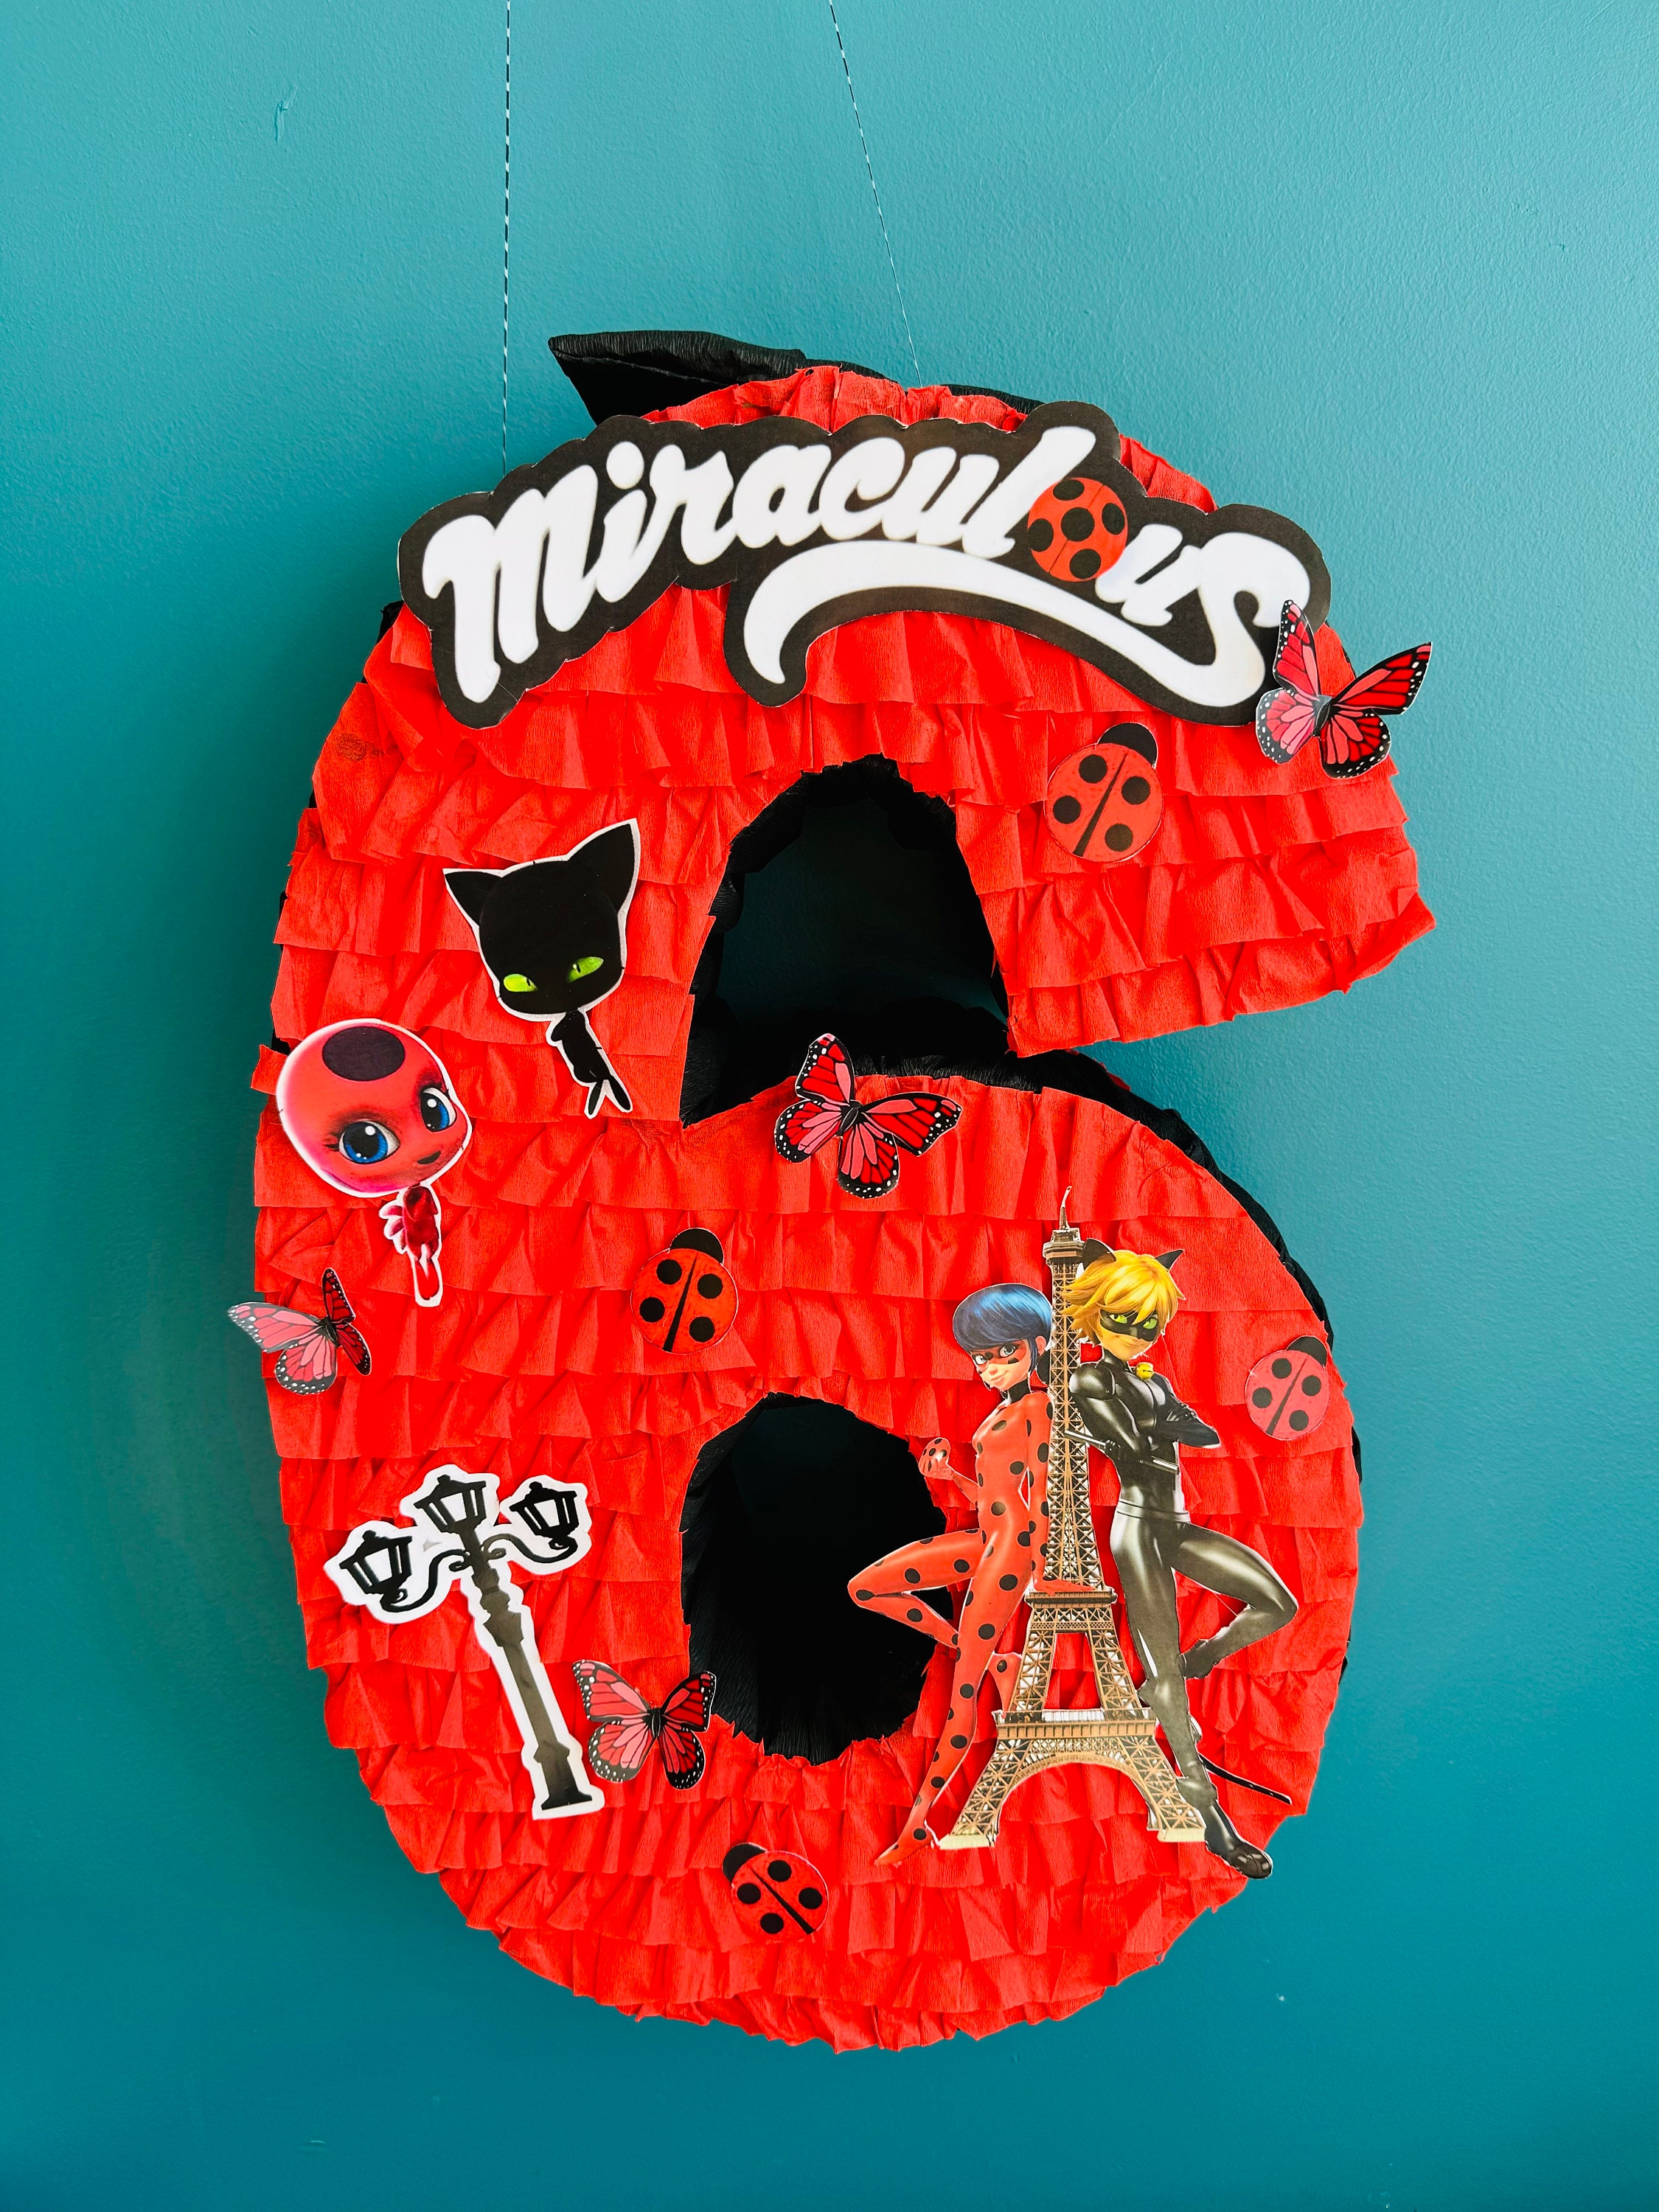 Piñata de Ladybug número 4 by Liz-Abby Piñatas